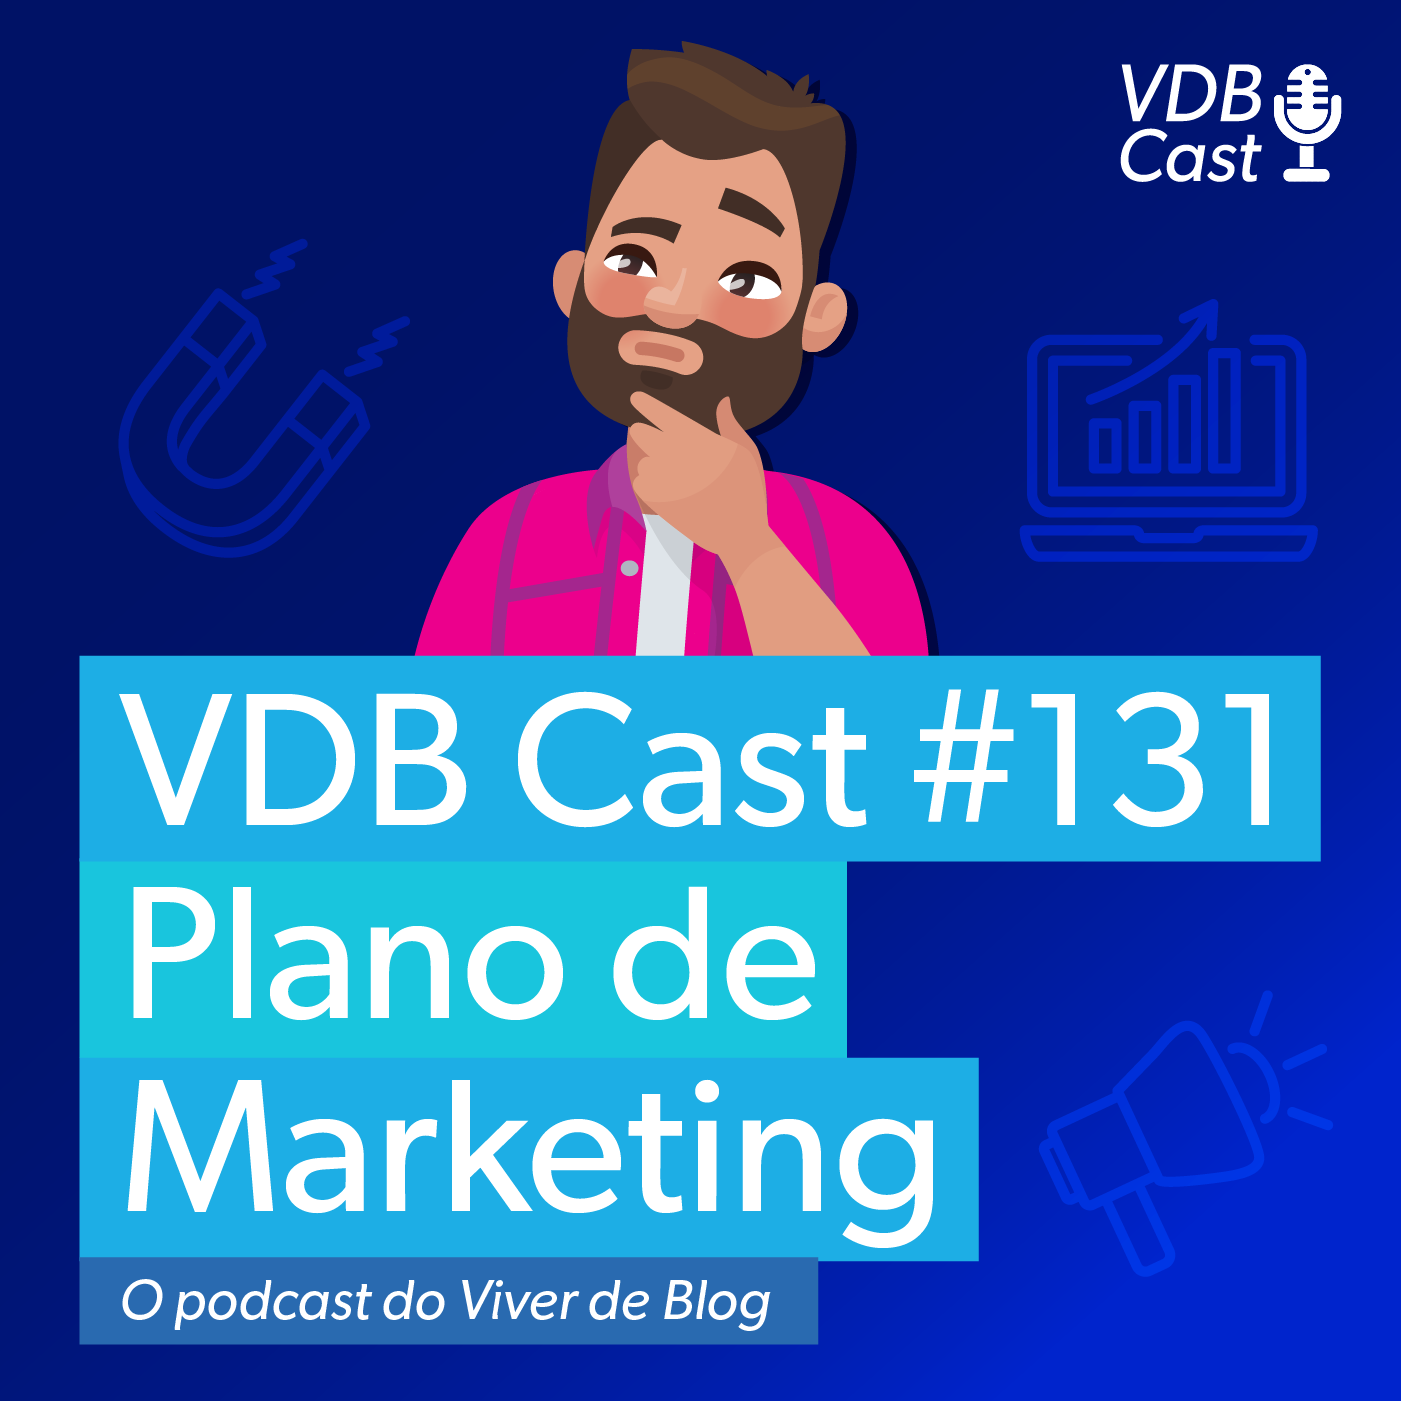 VDB Cast #131 - As 6 etapas essenciais de um Plano de Marketing